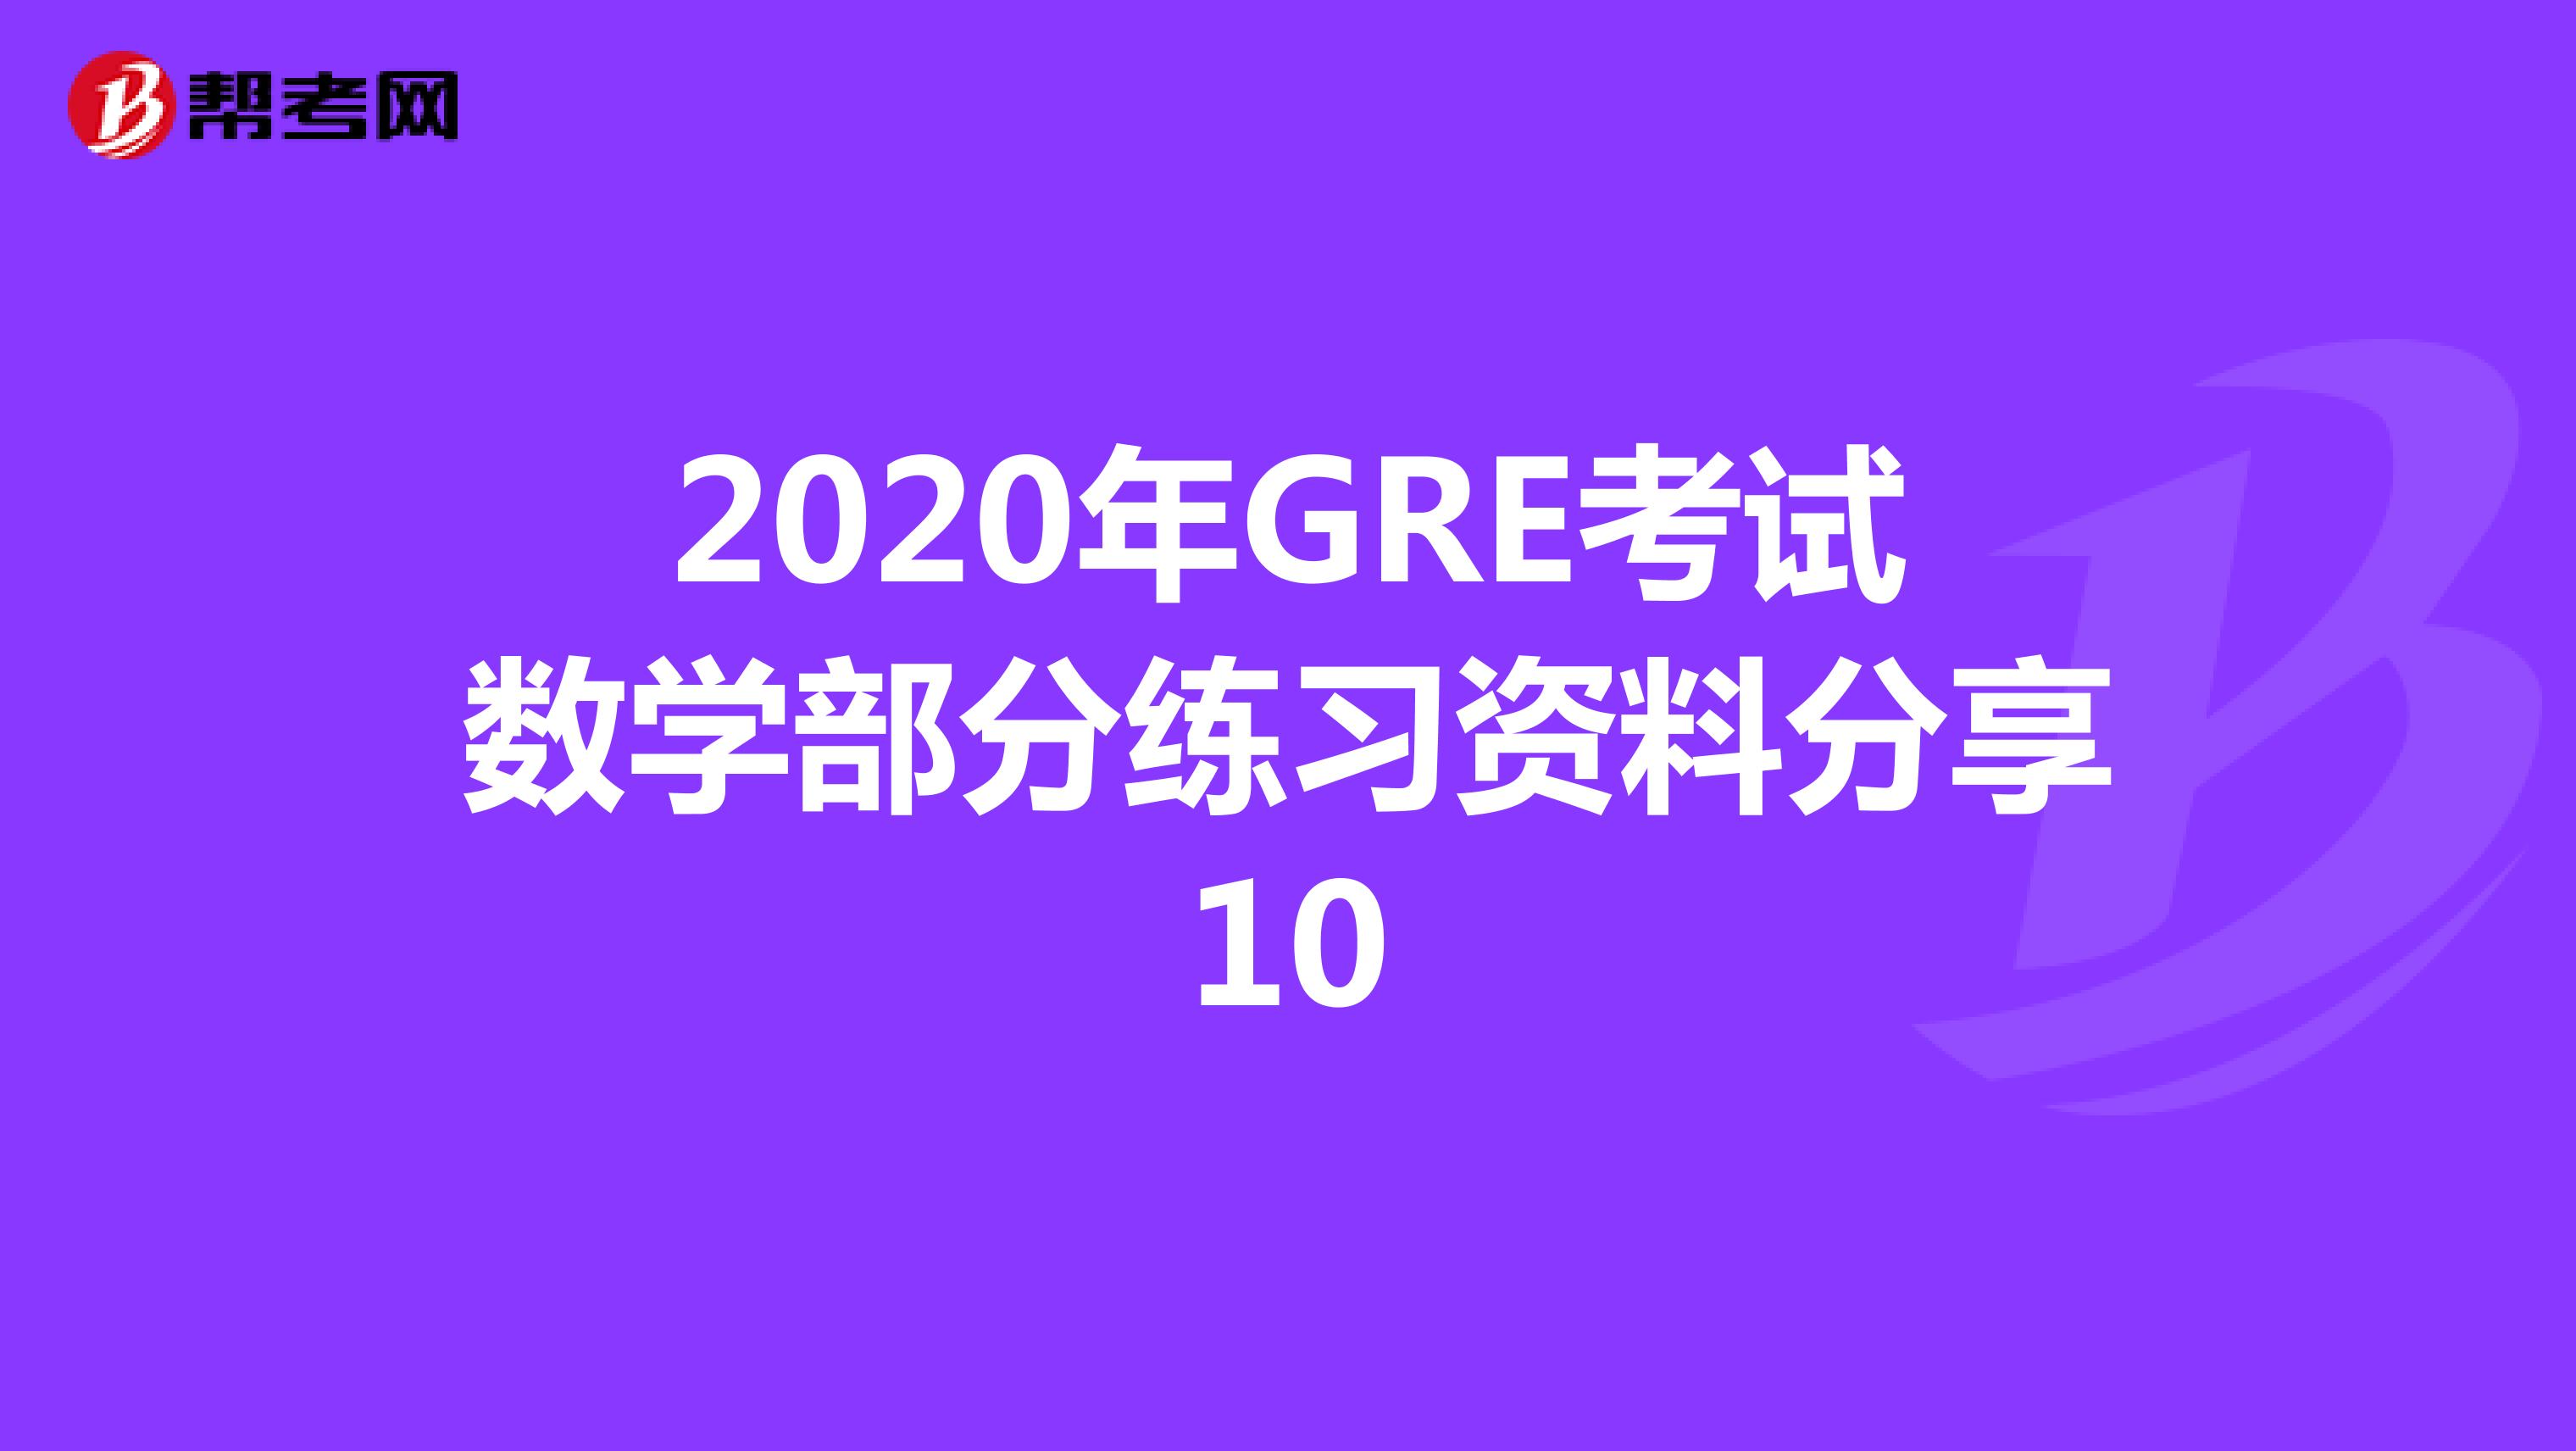 2020年GRE考试数学部分练习资料分享10